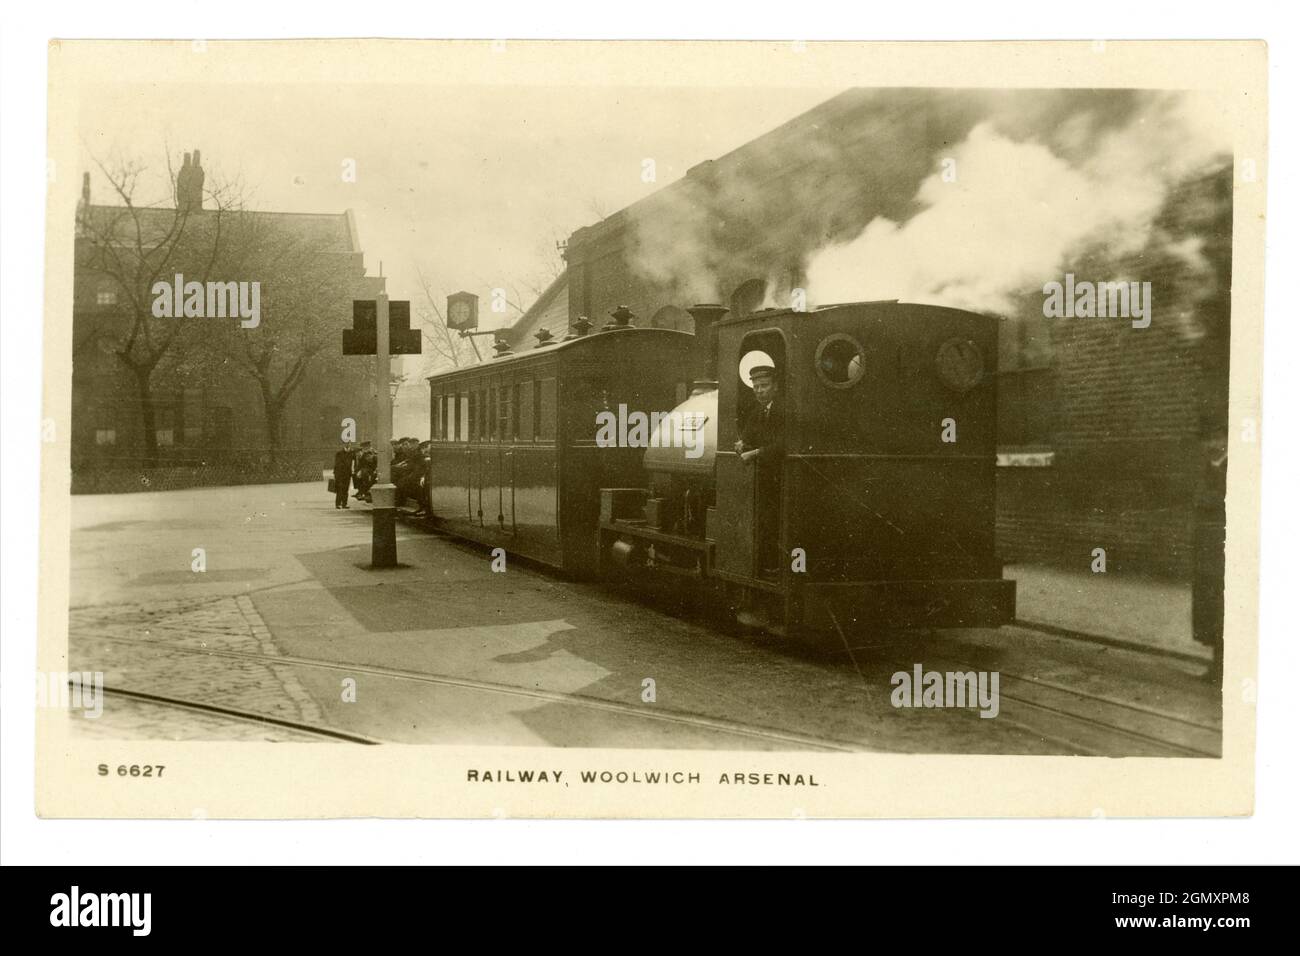 Carte postale de l'époque WW1 de moteur de chemin de fer (il y en avait 3) avec chauffeur attendant à une plate-forme - utilisé pour le transport de munitions, desservant Woolwich Arsenal. Appelé le Royal Arsenal Railway de Londres. Arsenal était une usine de remplissage de coquillages. 1914-1918 Banque D'Images